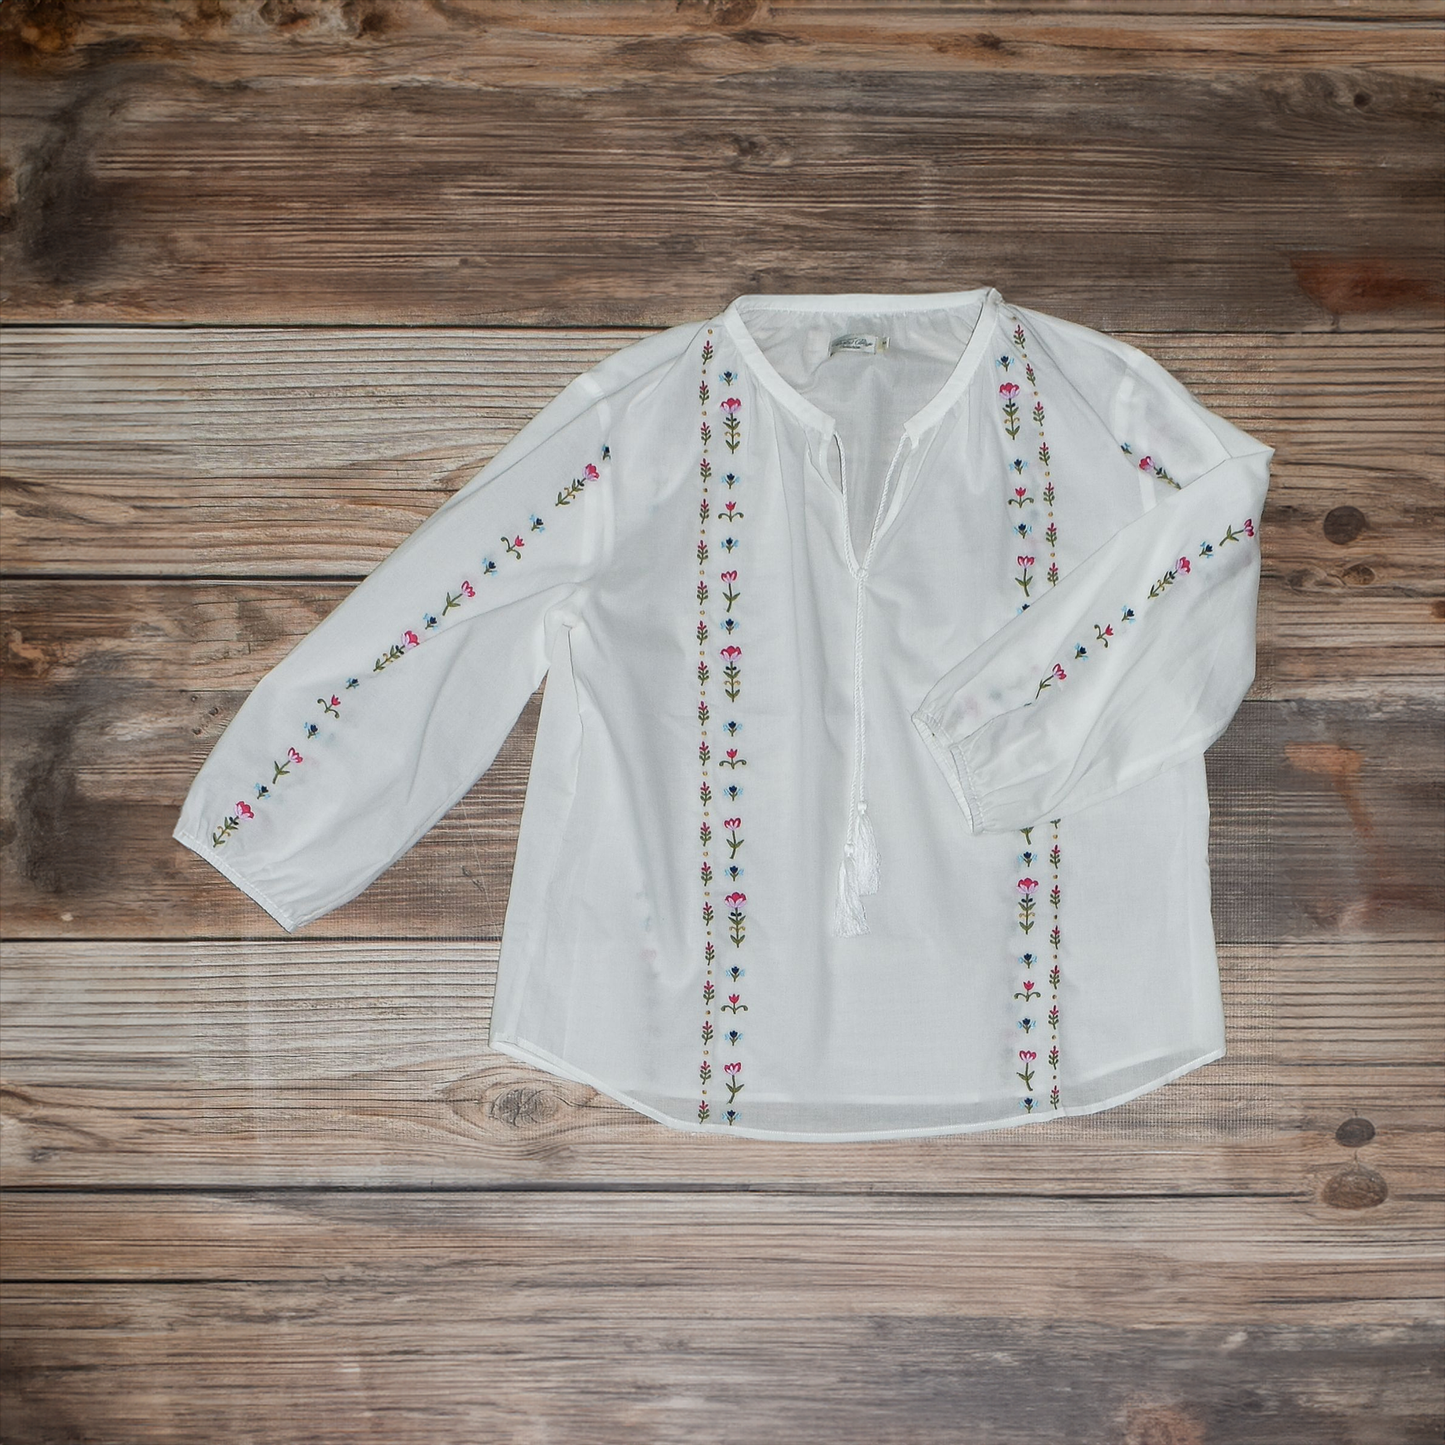 Tasha Polizzi Natalie Embroidered Woven Blouse - White